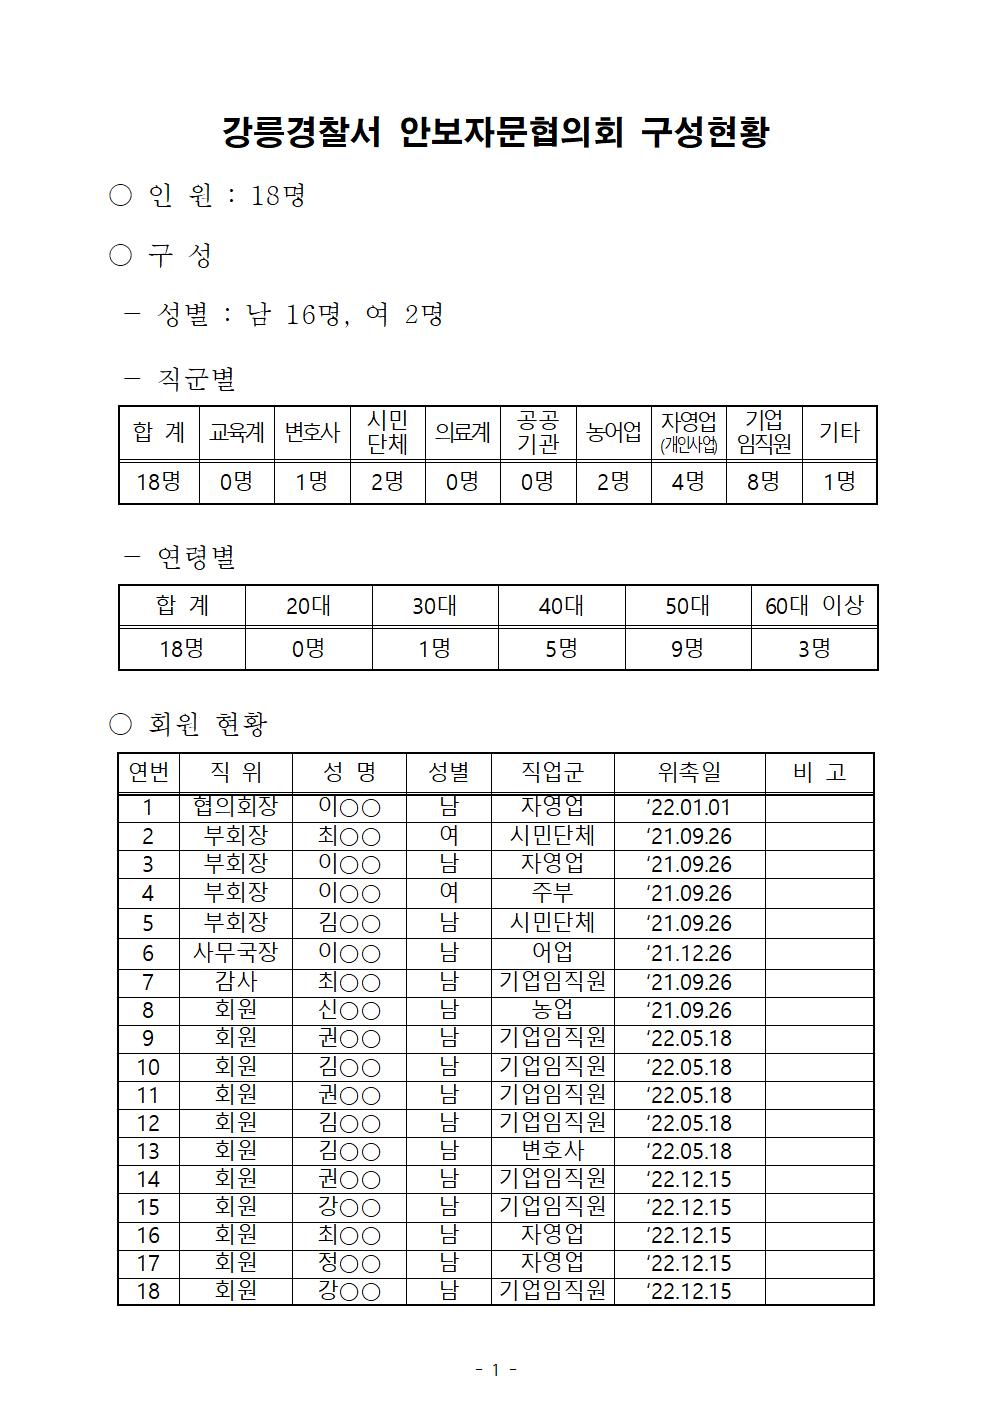 강릉경찰서 안보자문협의회 구성현황-강릉서 안보자문협의회 현황(12.15))001